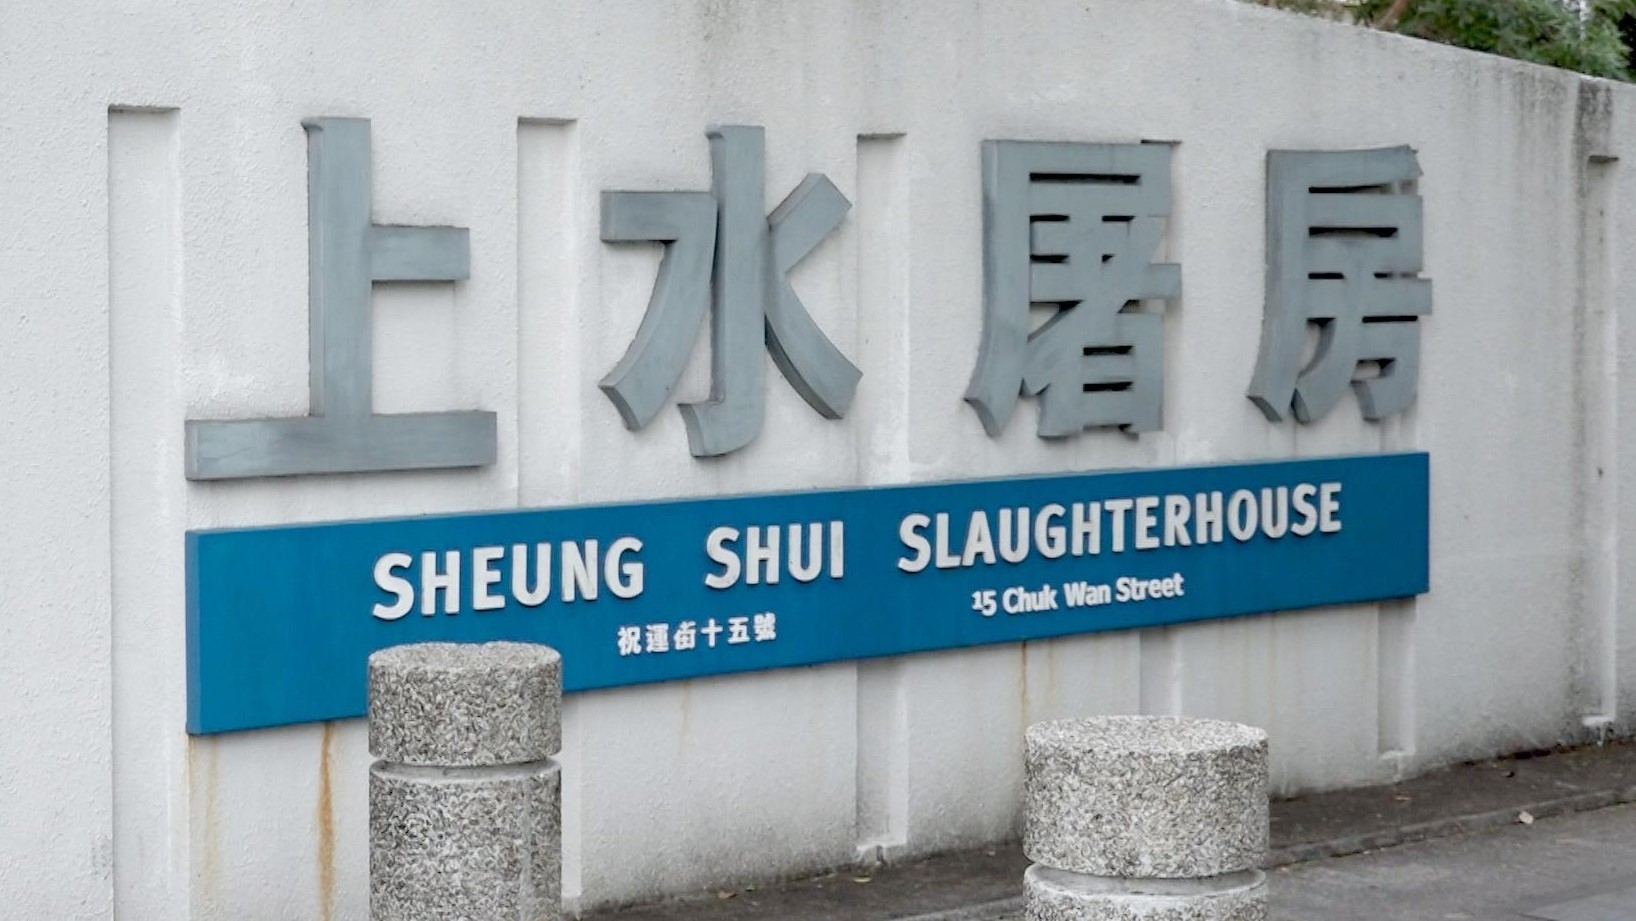 Sheung shui slaughterhouse